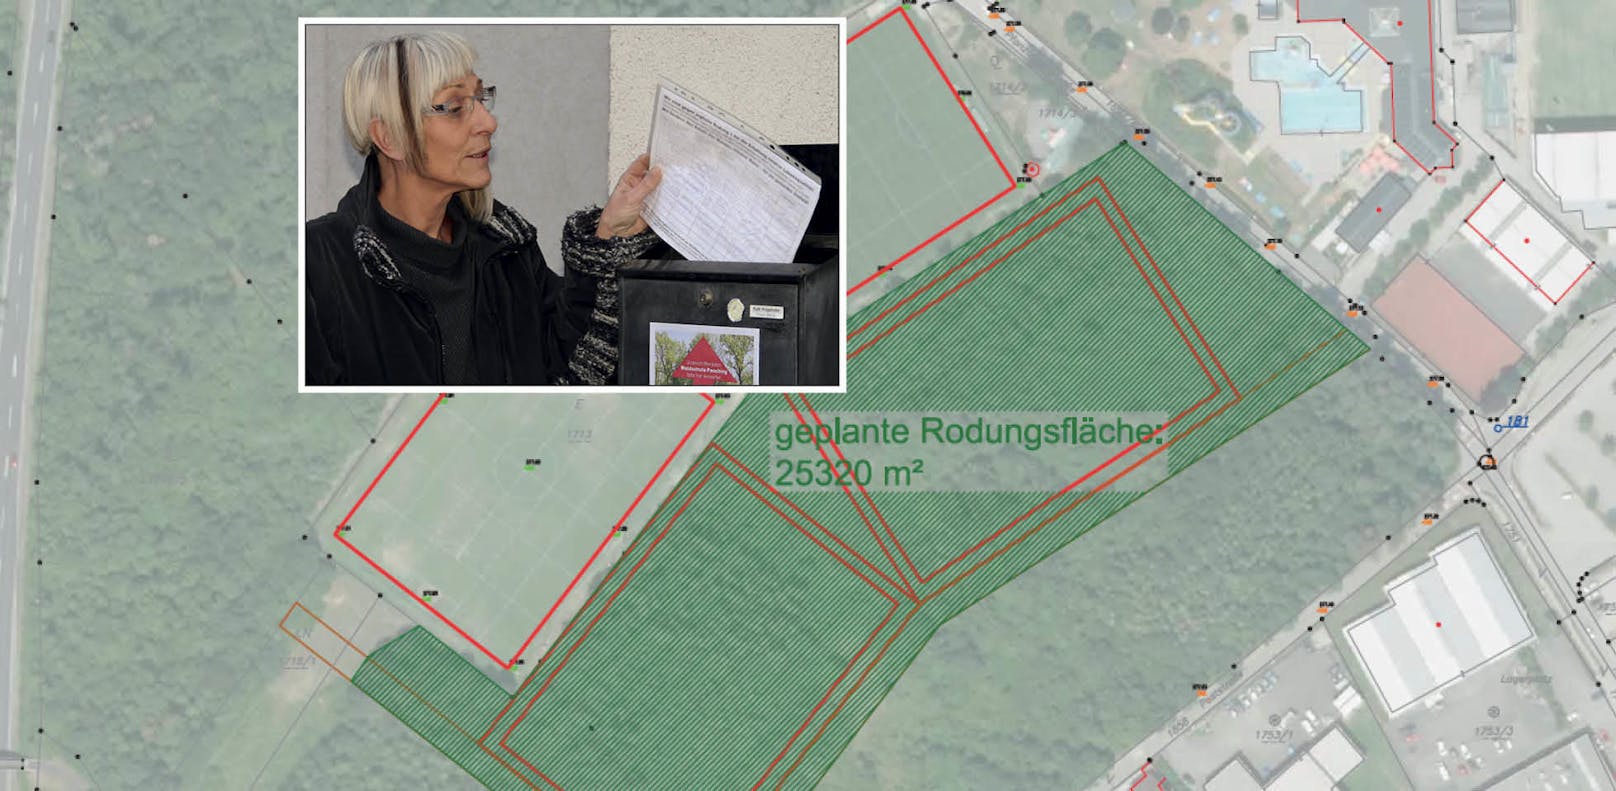 Ruth Kropshofer kämpft mit der Initiative "Waldschutz Pasching" für den Erhalt des Waldes.